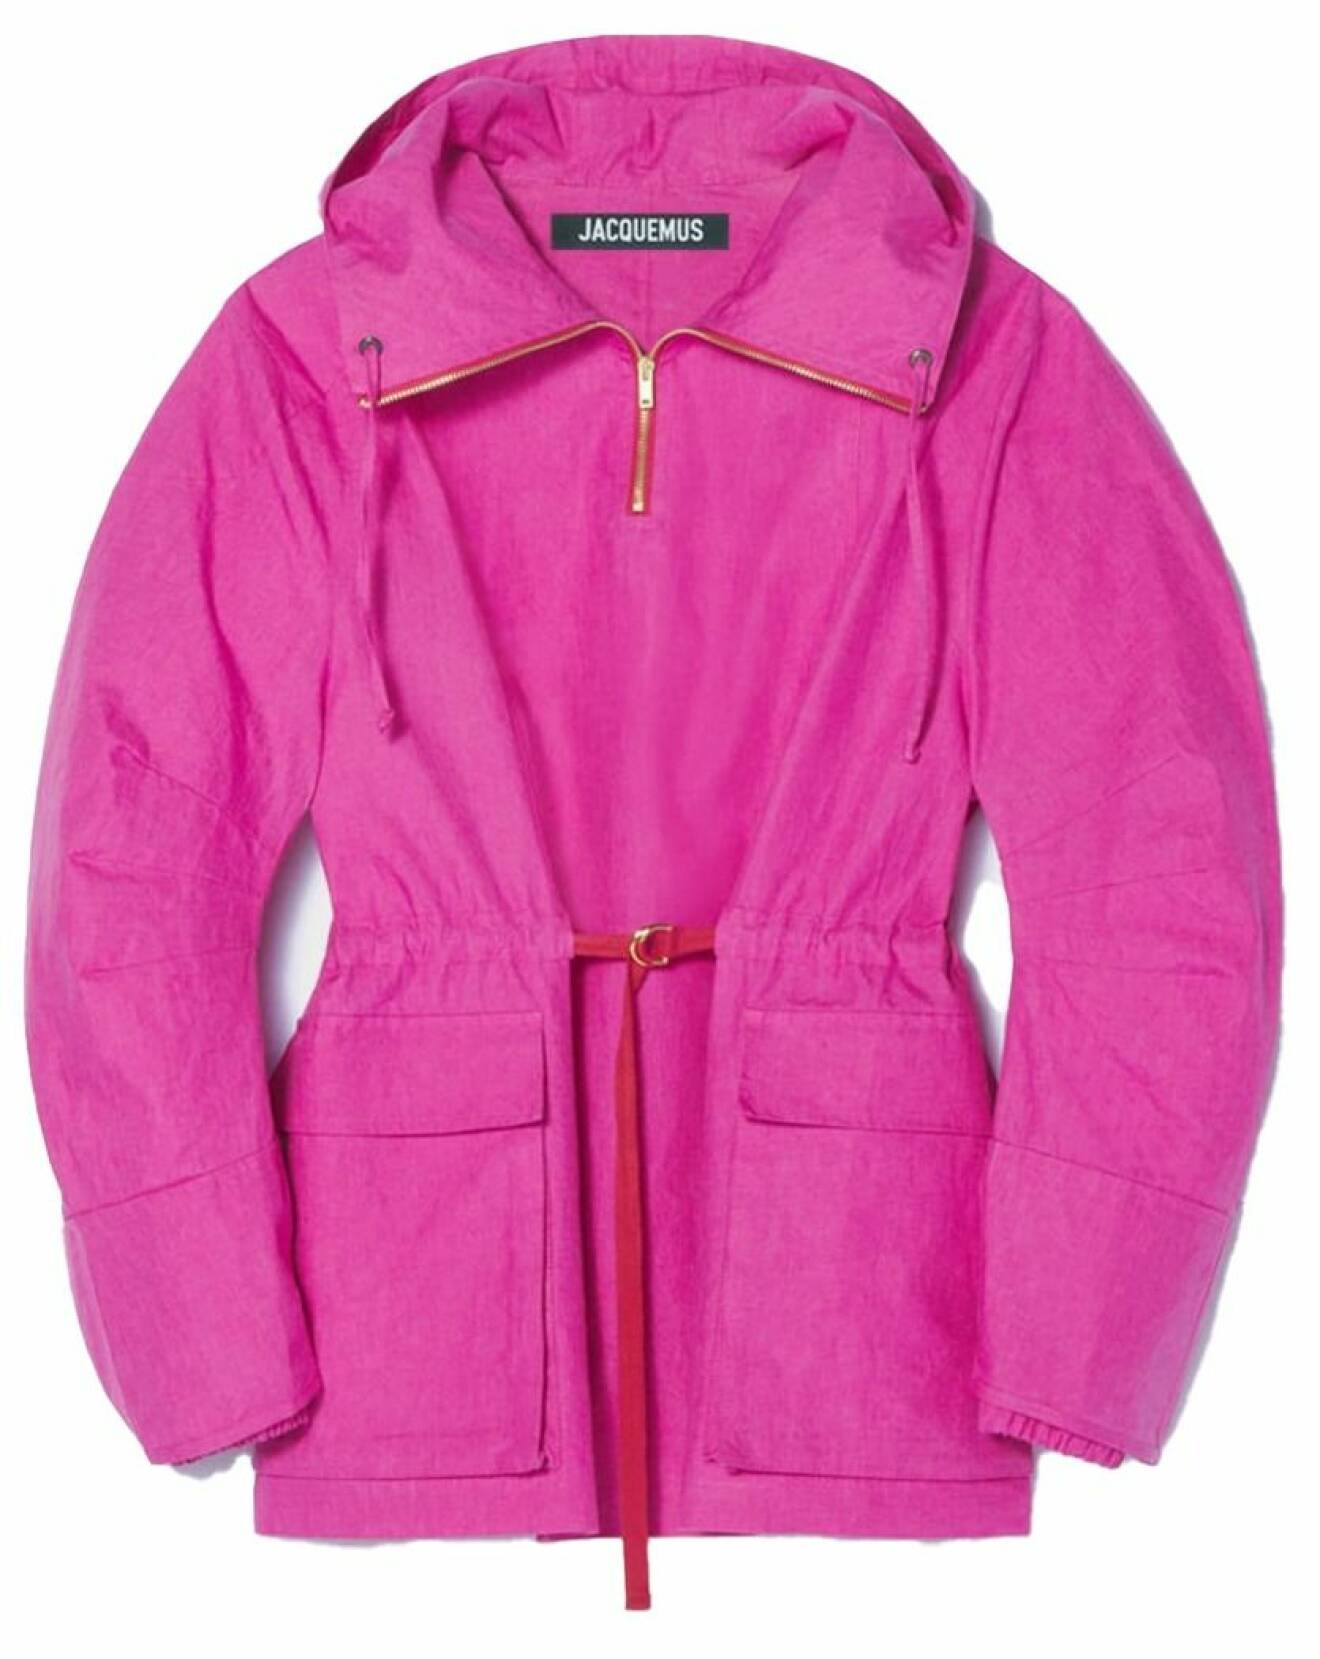 Snygg rosa jacka från Jacquemus höstkollektion 2021